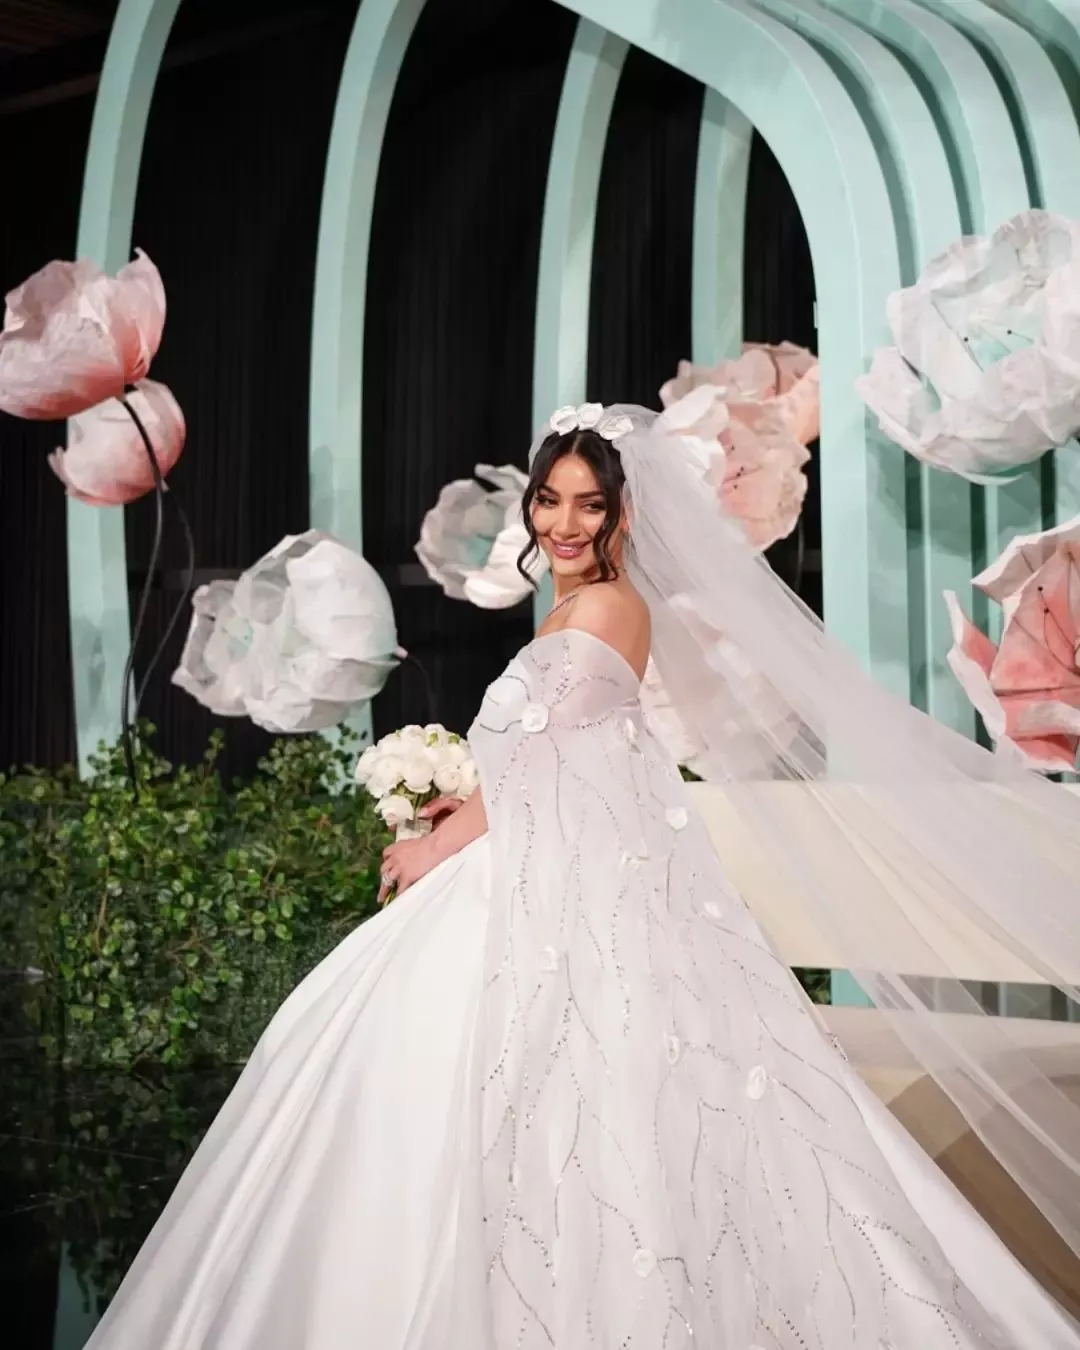 صور حفل زفاف دونا الحسين في الرياض: إطلالة فخمة وأنثوية